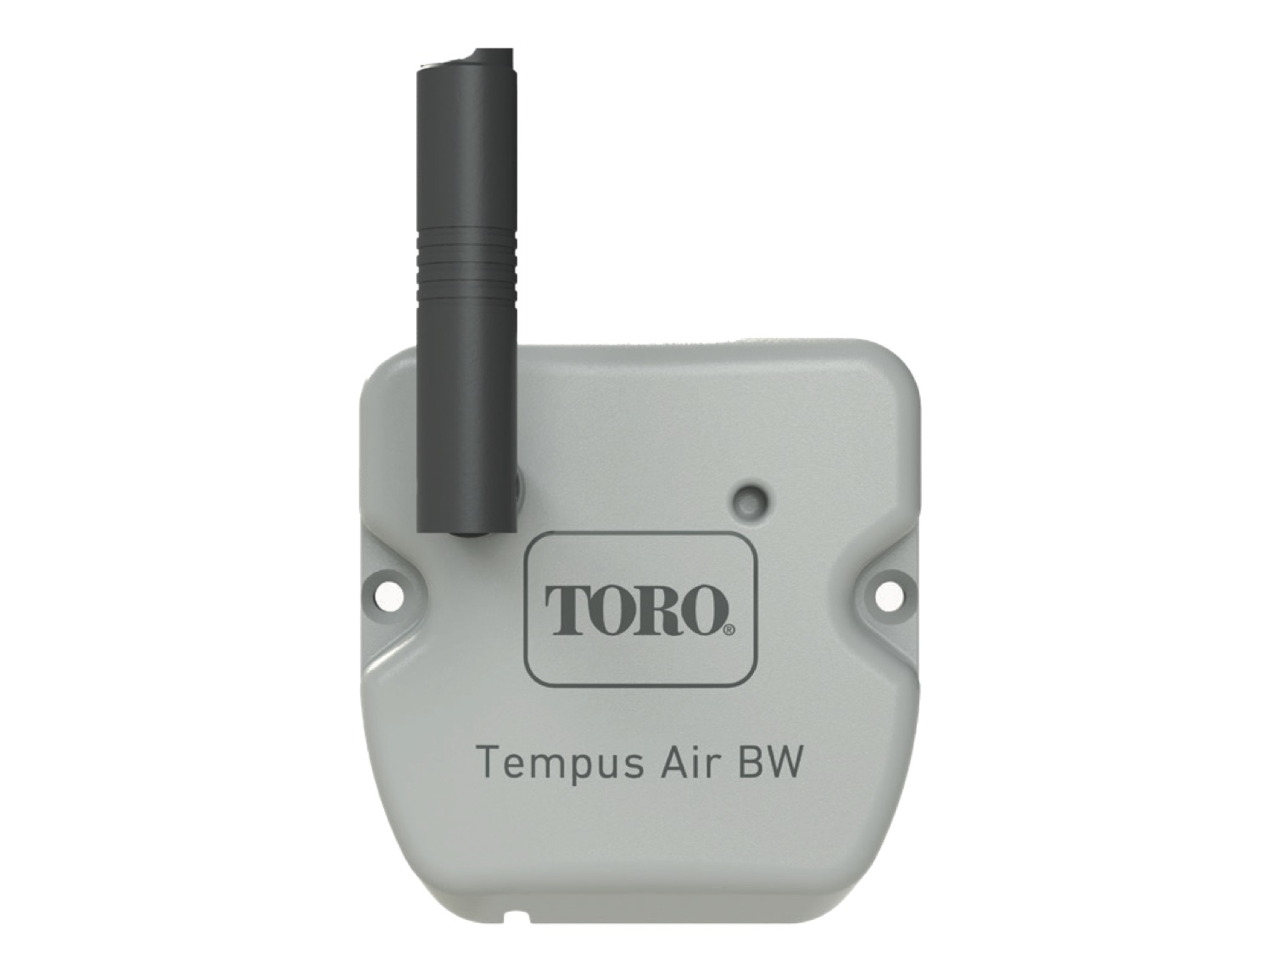 The Toro Company Tempus Air BW